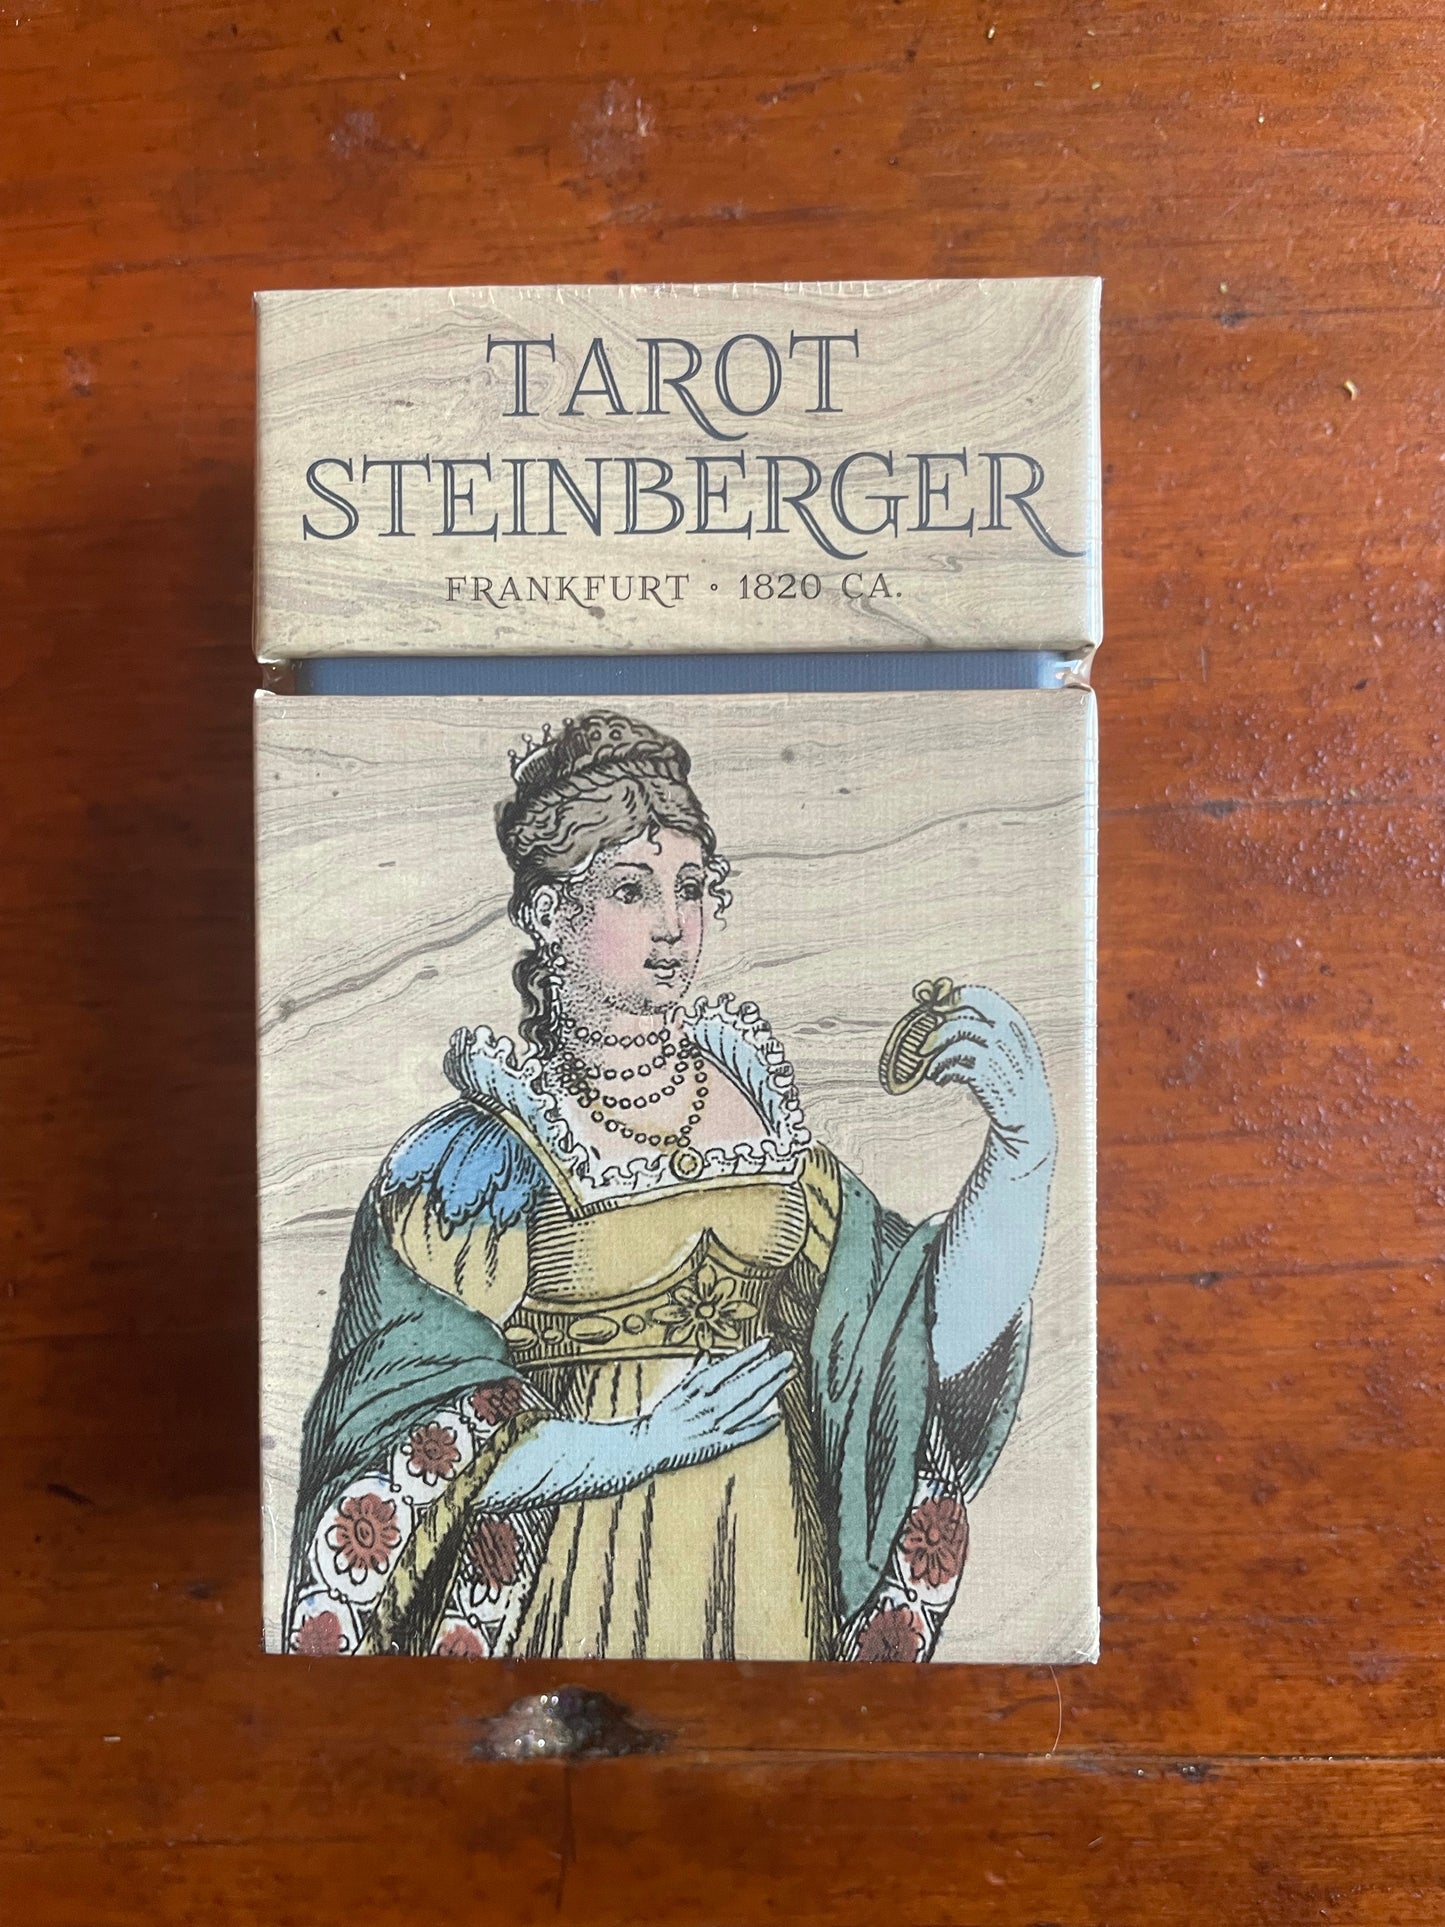 Tarot Steinberger